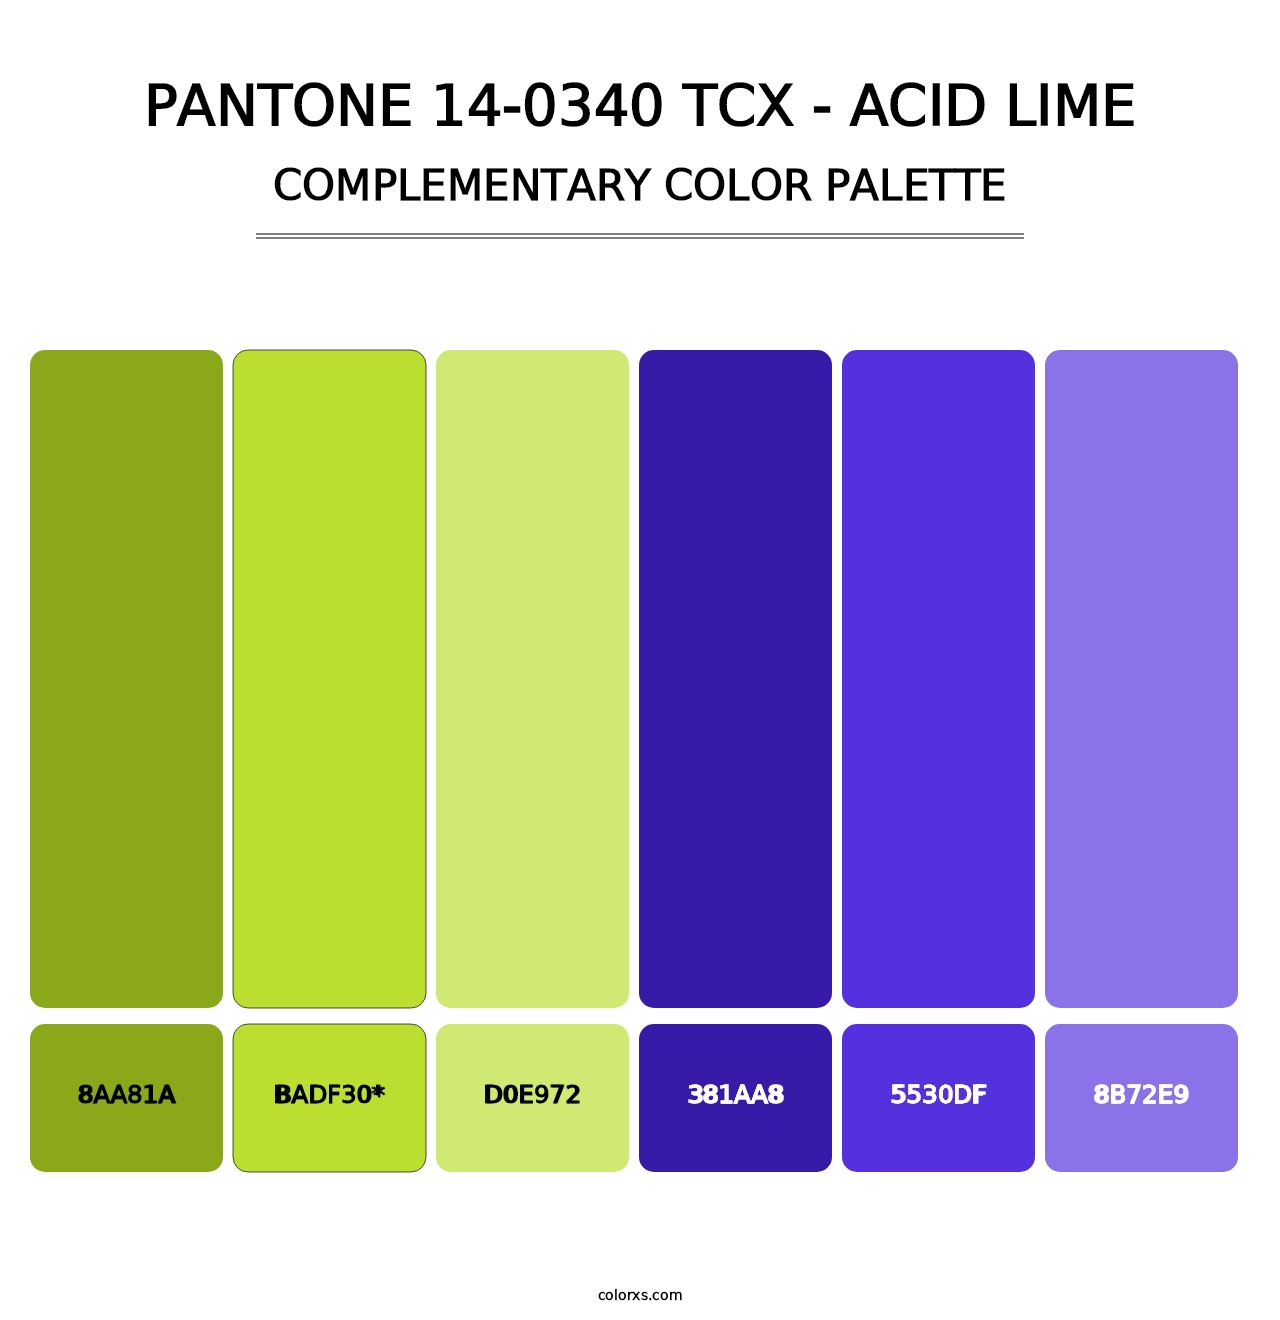 PANTONE 14-0340 TCX - Acid Lime - Complementary Color Palette